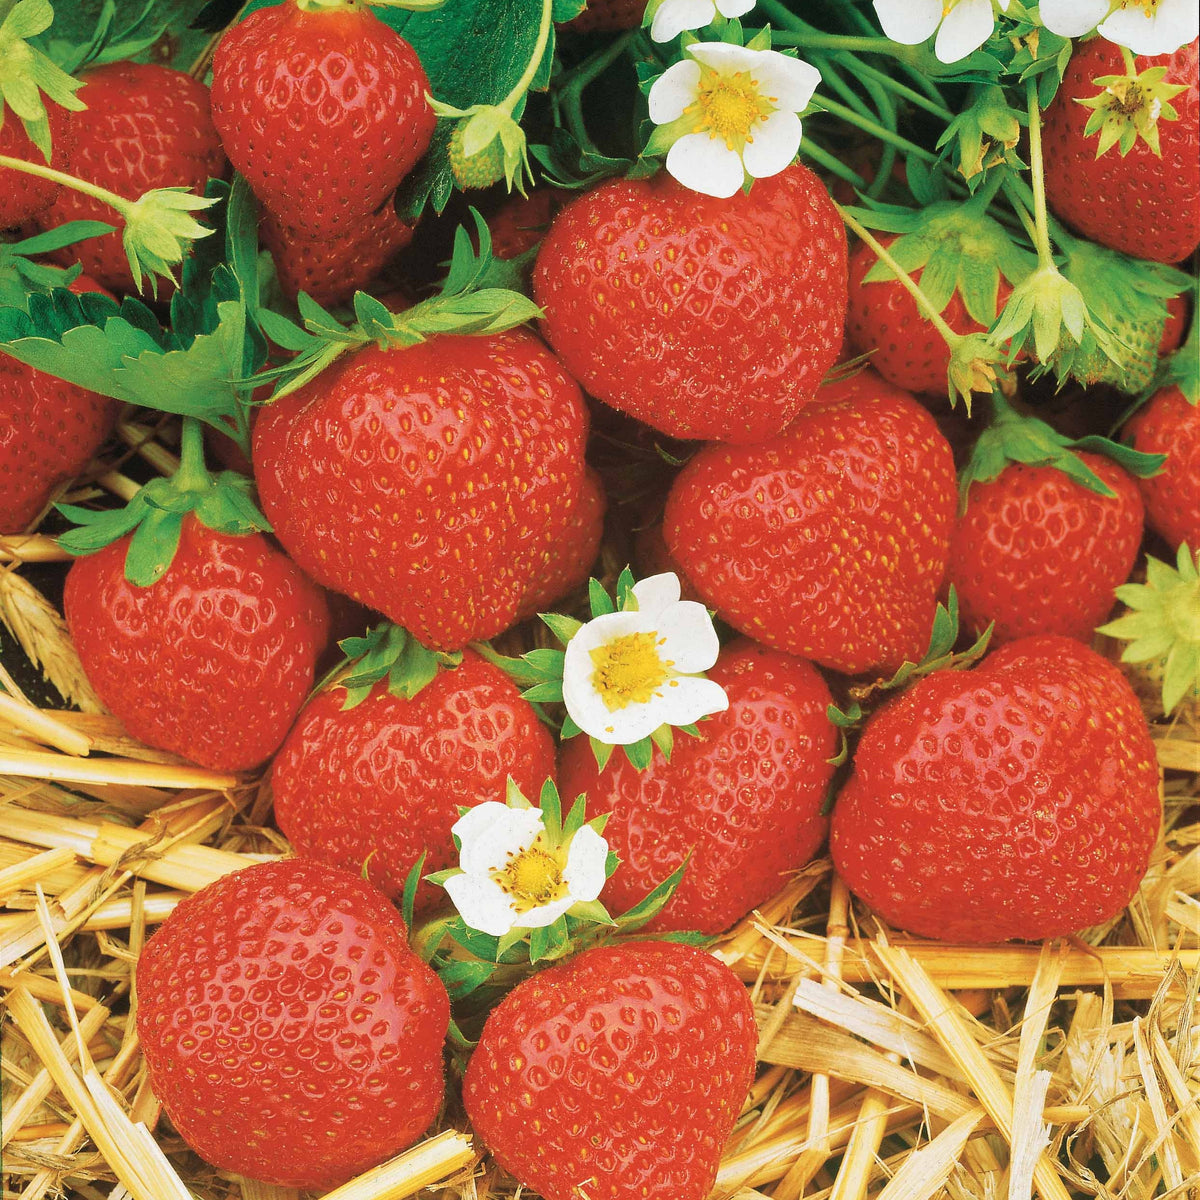 Collection de 60 fraises de 6 mois : Mara des Bois, Maestro, Gariguette - Fragaria 'mara des bois', 'maestro', 'gariguette' - Plantes